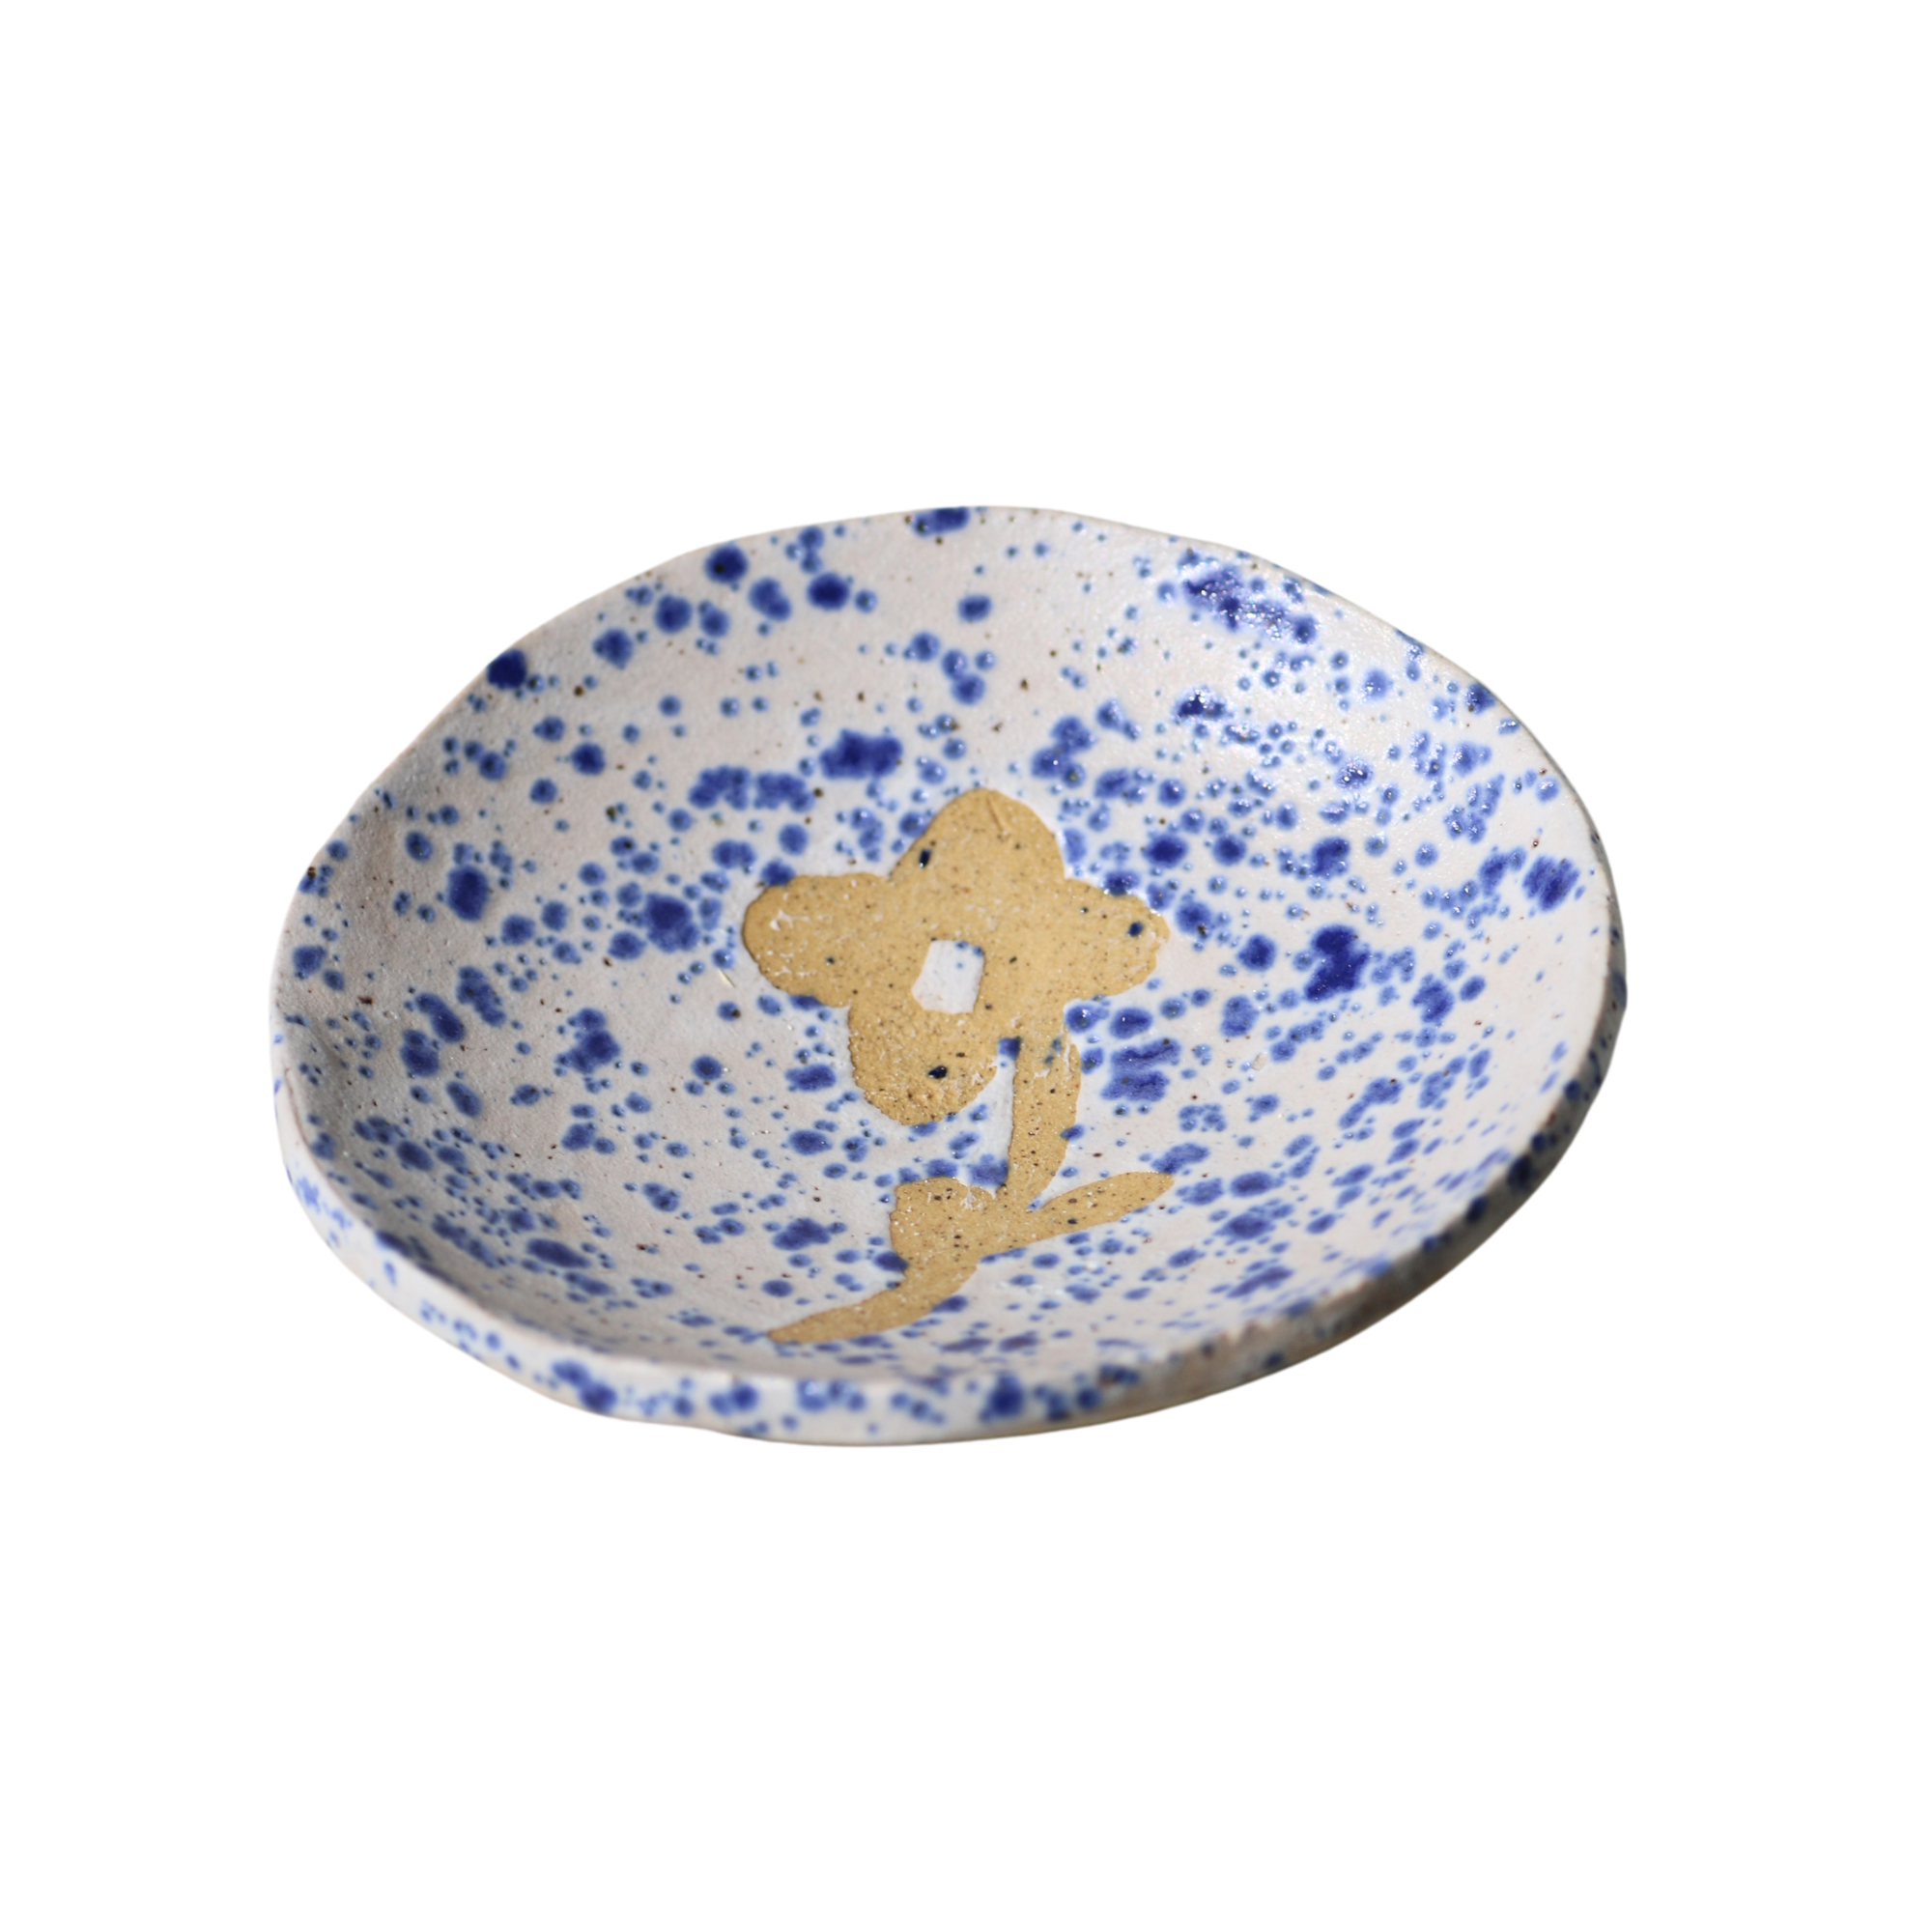 Dish No. 22 - Crabapple Design Ceramic Dish